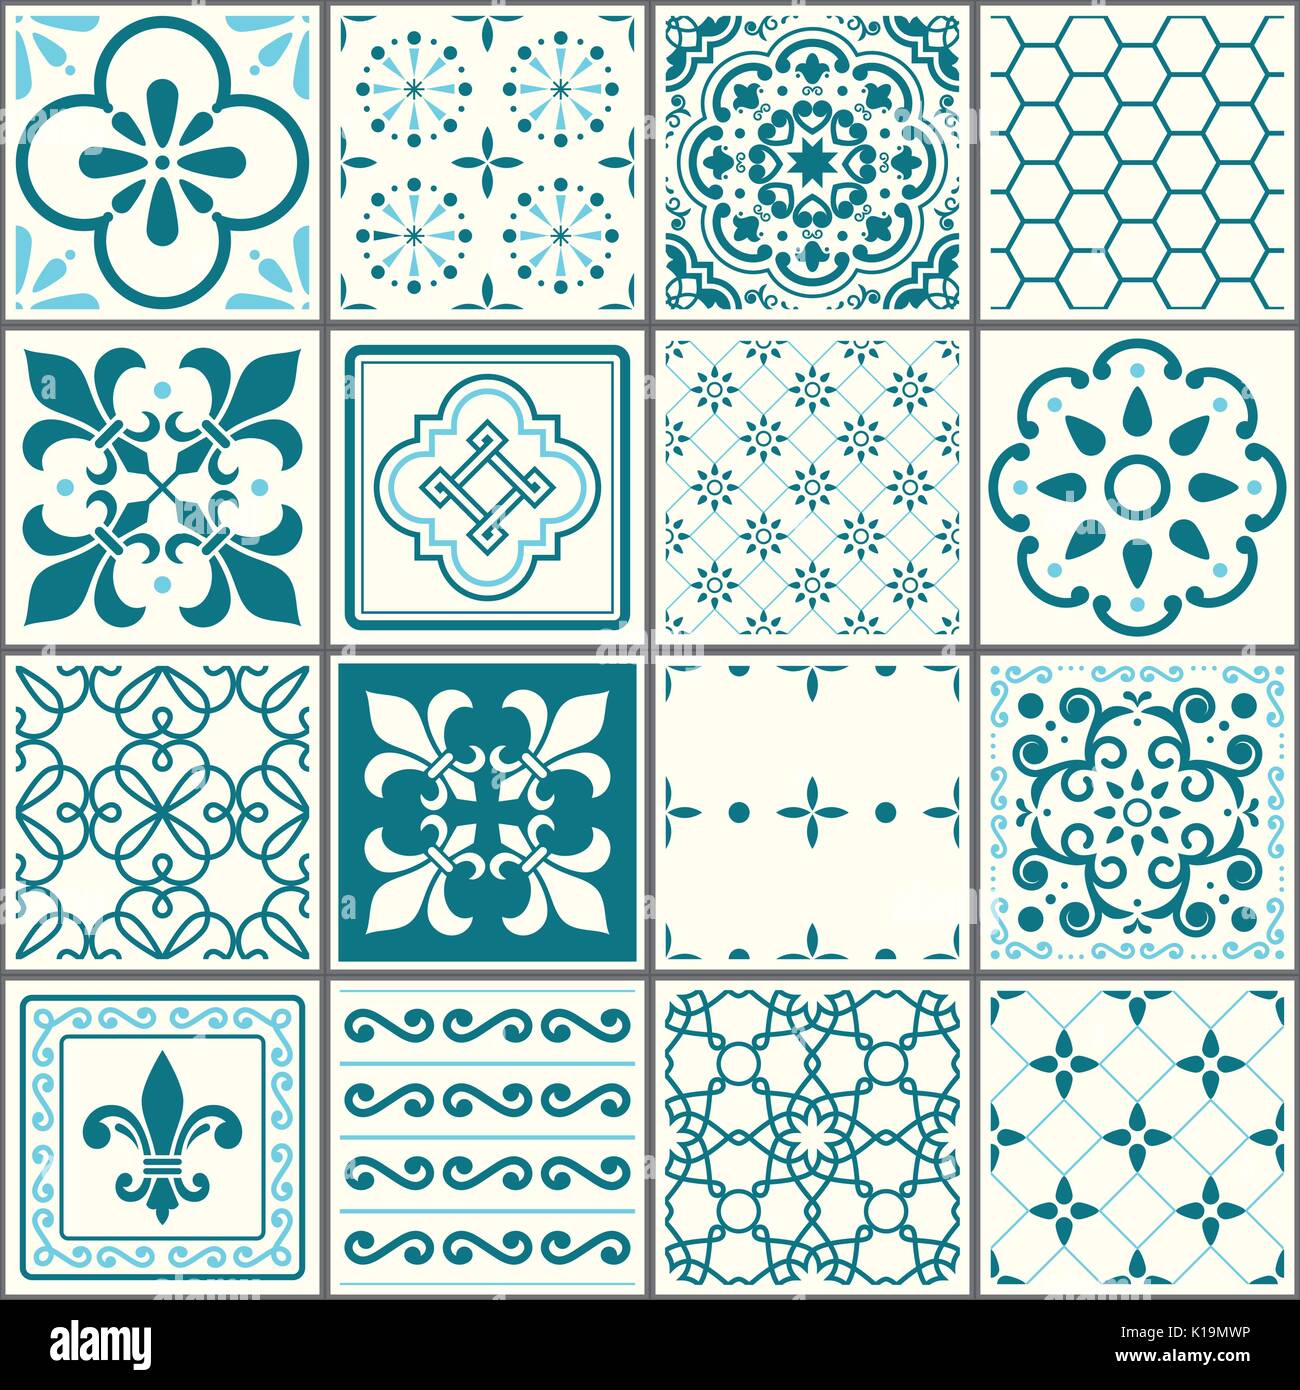 Motif carreaux portugais, Lisbonne azulejos, carreaux turquoise transparent vintage design céramique géométrique Illustration de Vecteur